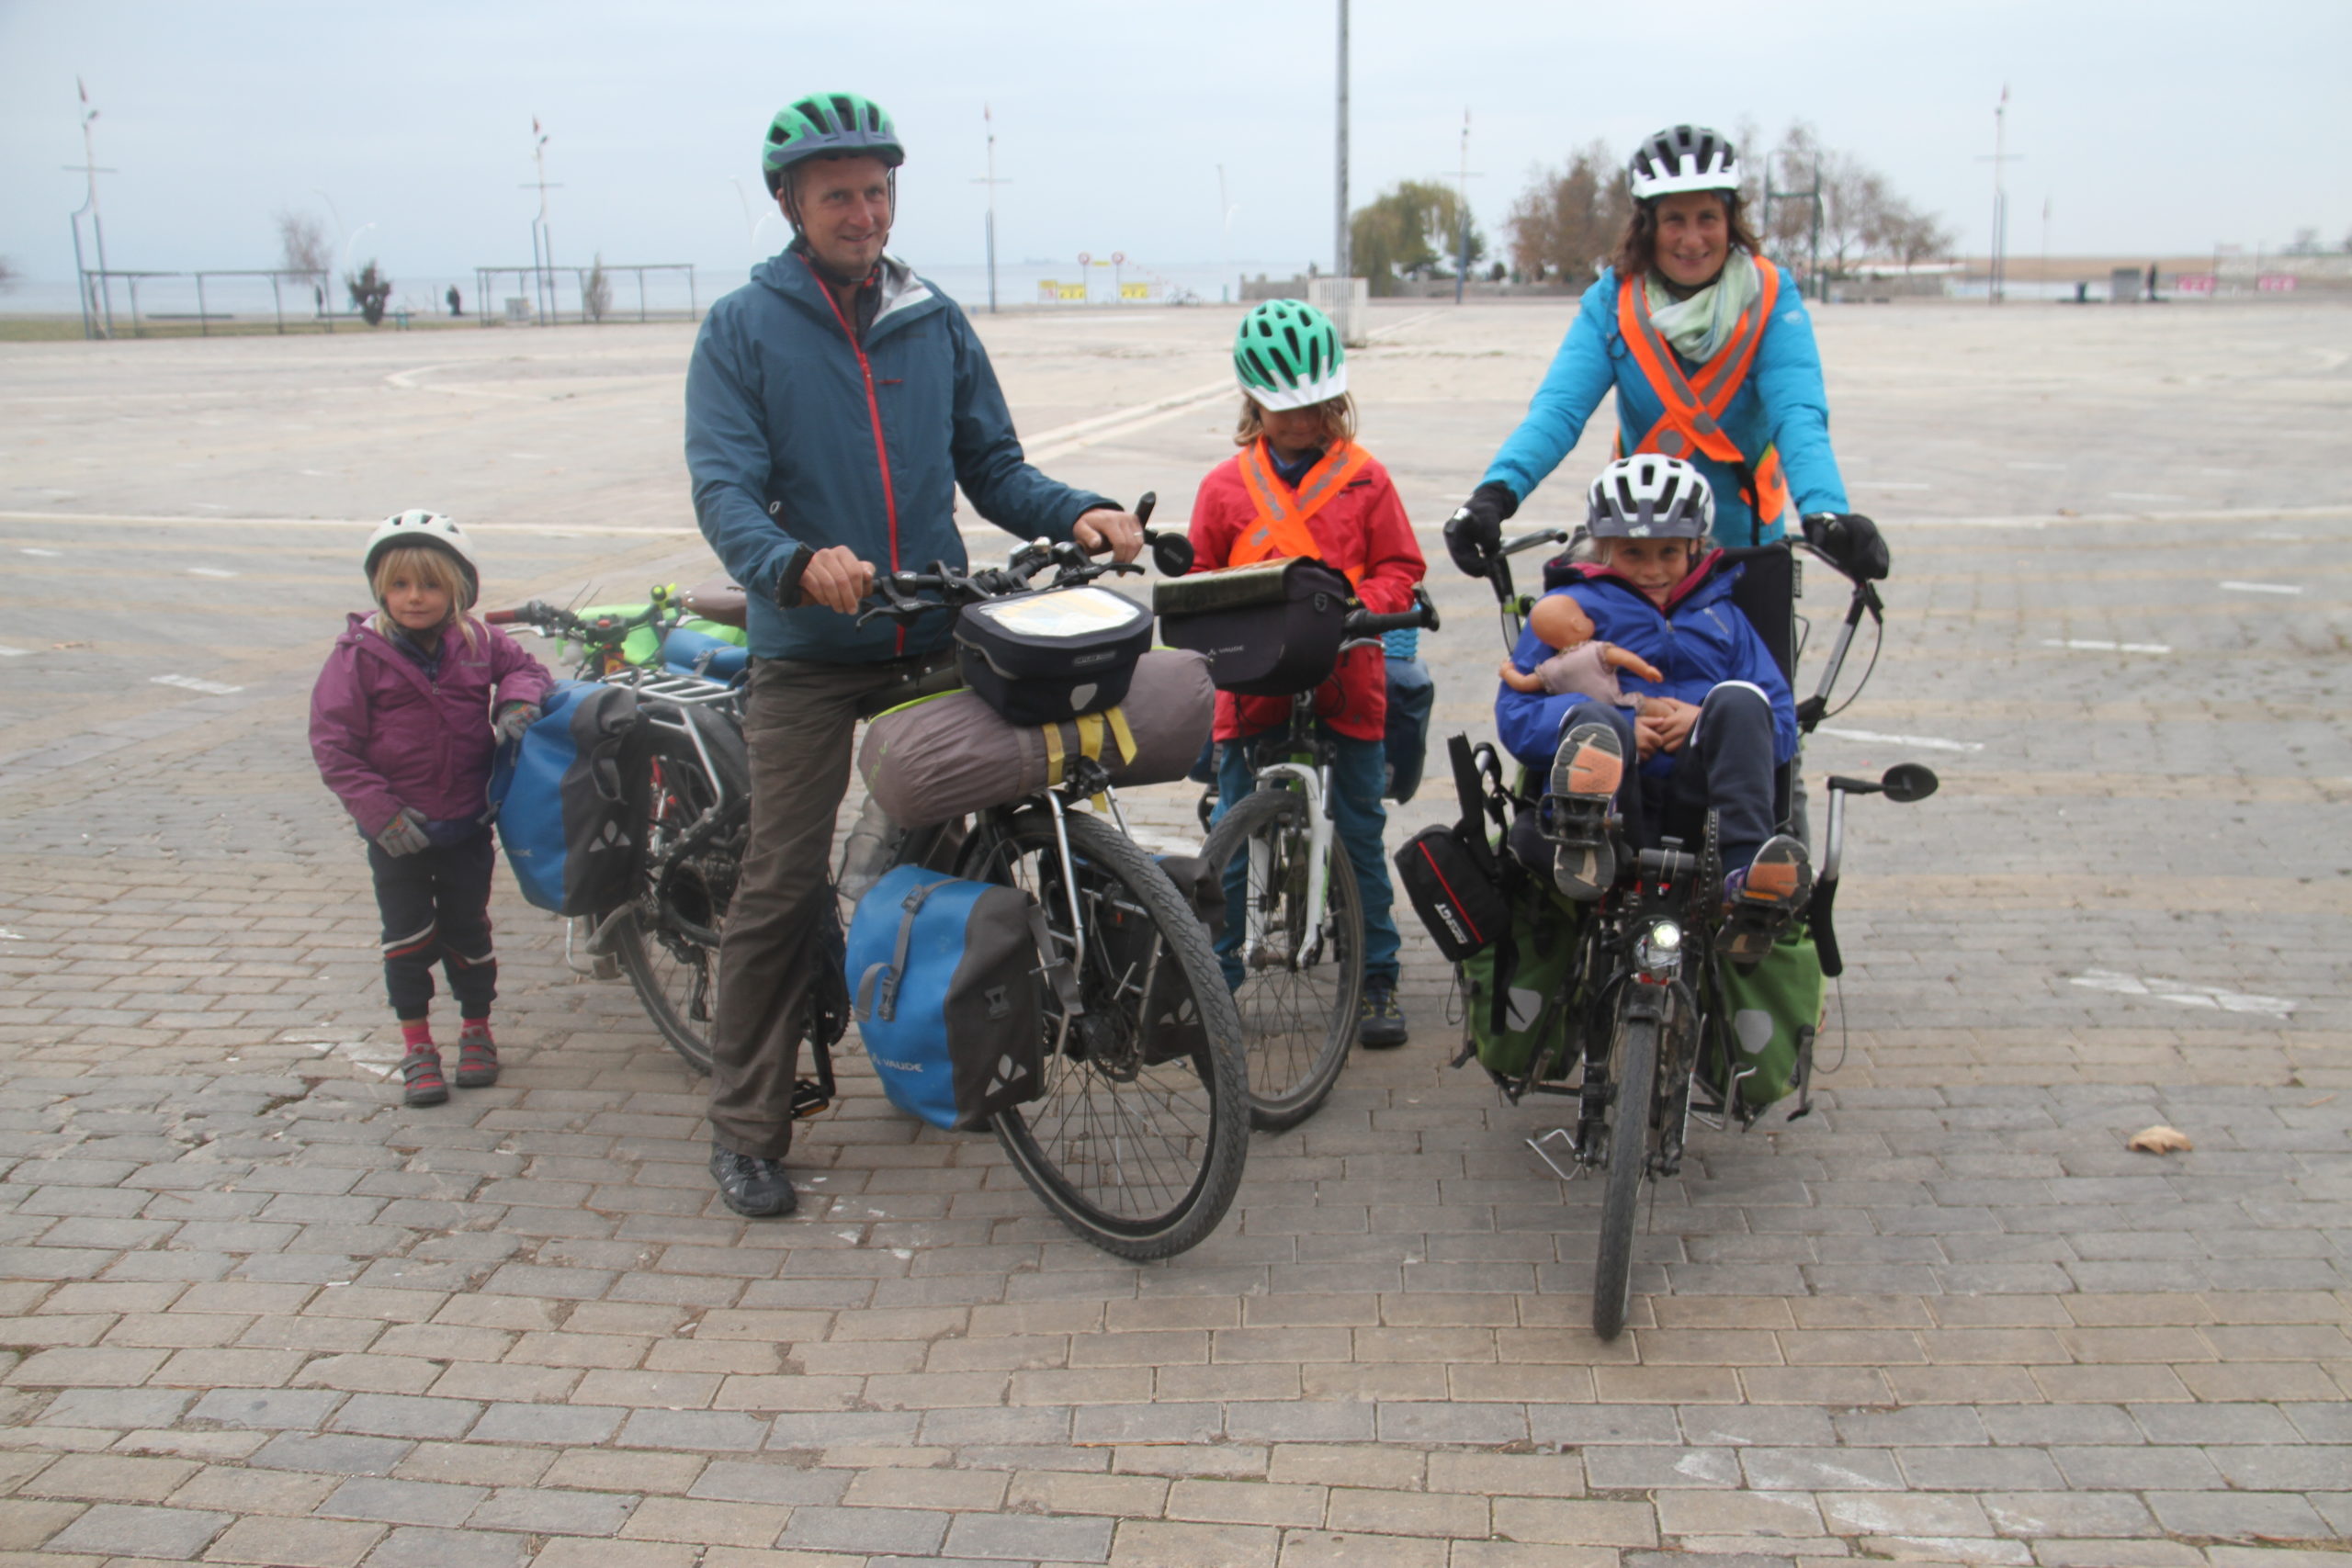 Bisikletle Avrupa Ve Asya Turuna Kan Frans Z Aile Konya Da Mola Verdi